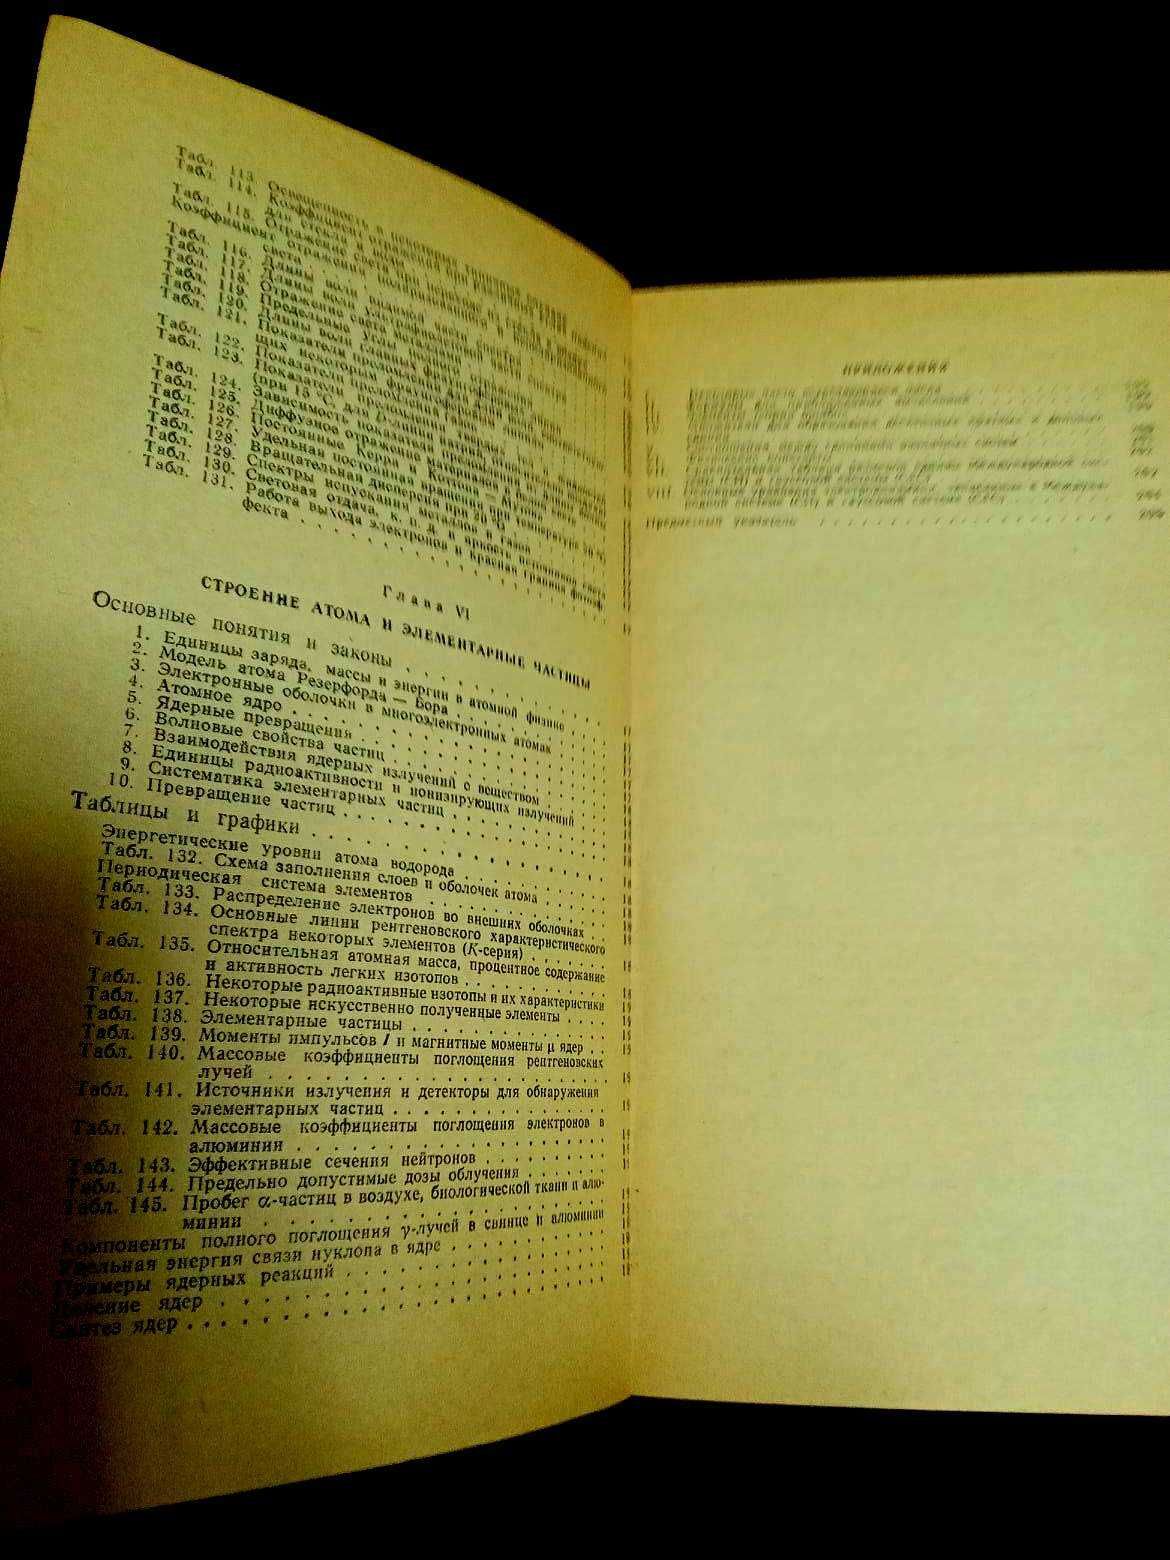 Довідник по елементарній фізиці. Н. І. Кошкін. 8-е видання, 1980р.